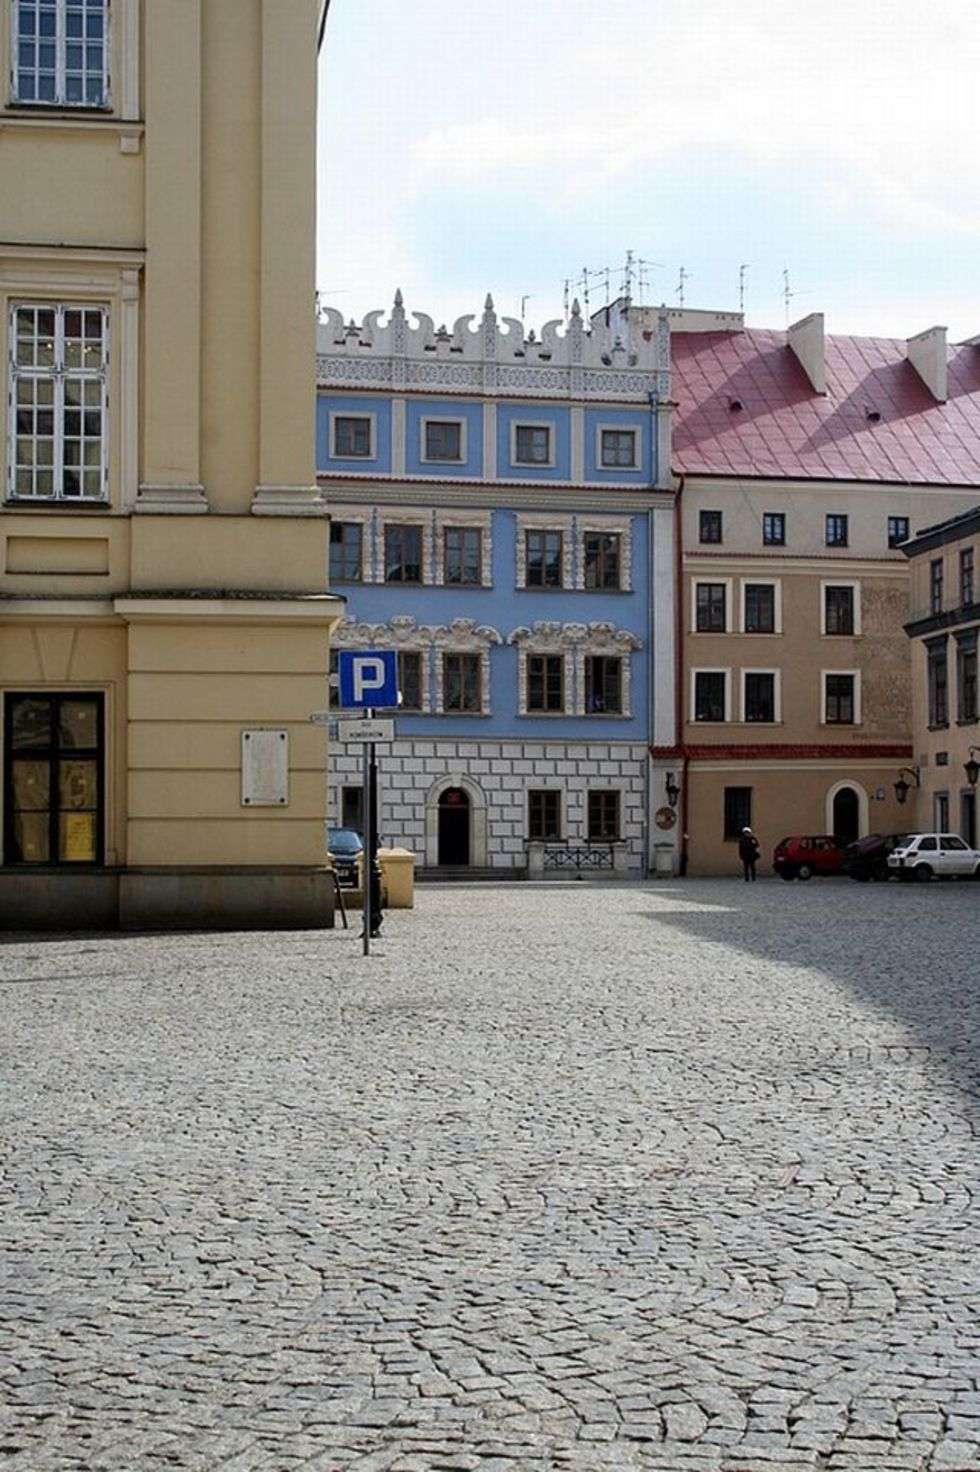  Lublin dziś  - ślsdem fotografii Józefa Czechowicza. Z archiwum Ośrodka Brama Grodzka Teatr NN.
